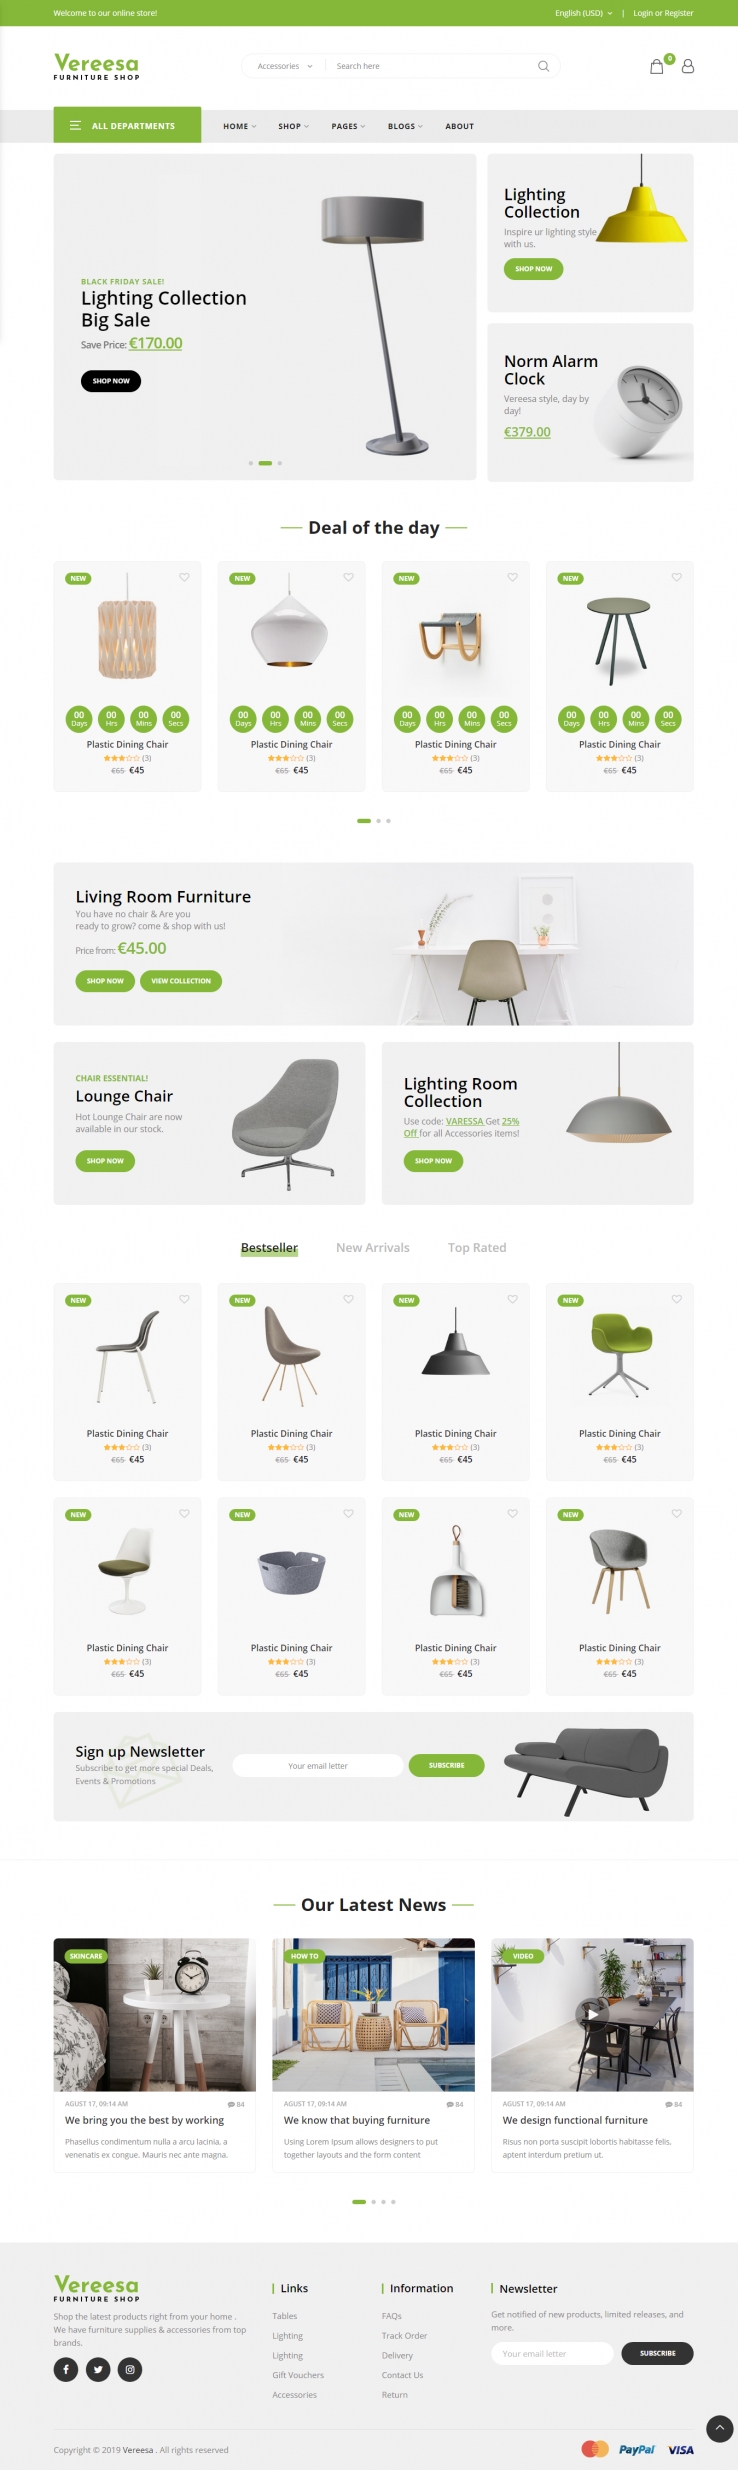 绿色欧美风格的家具店铺商城网站源码下载